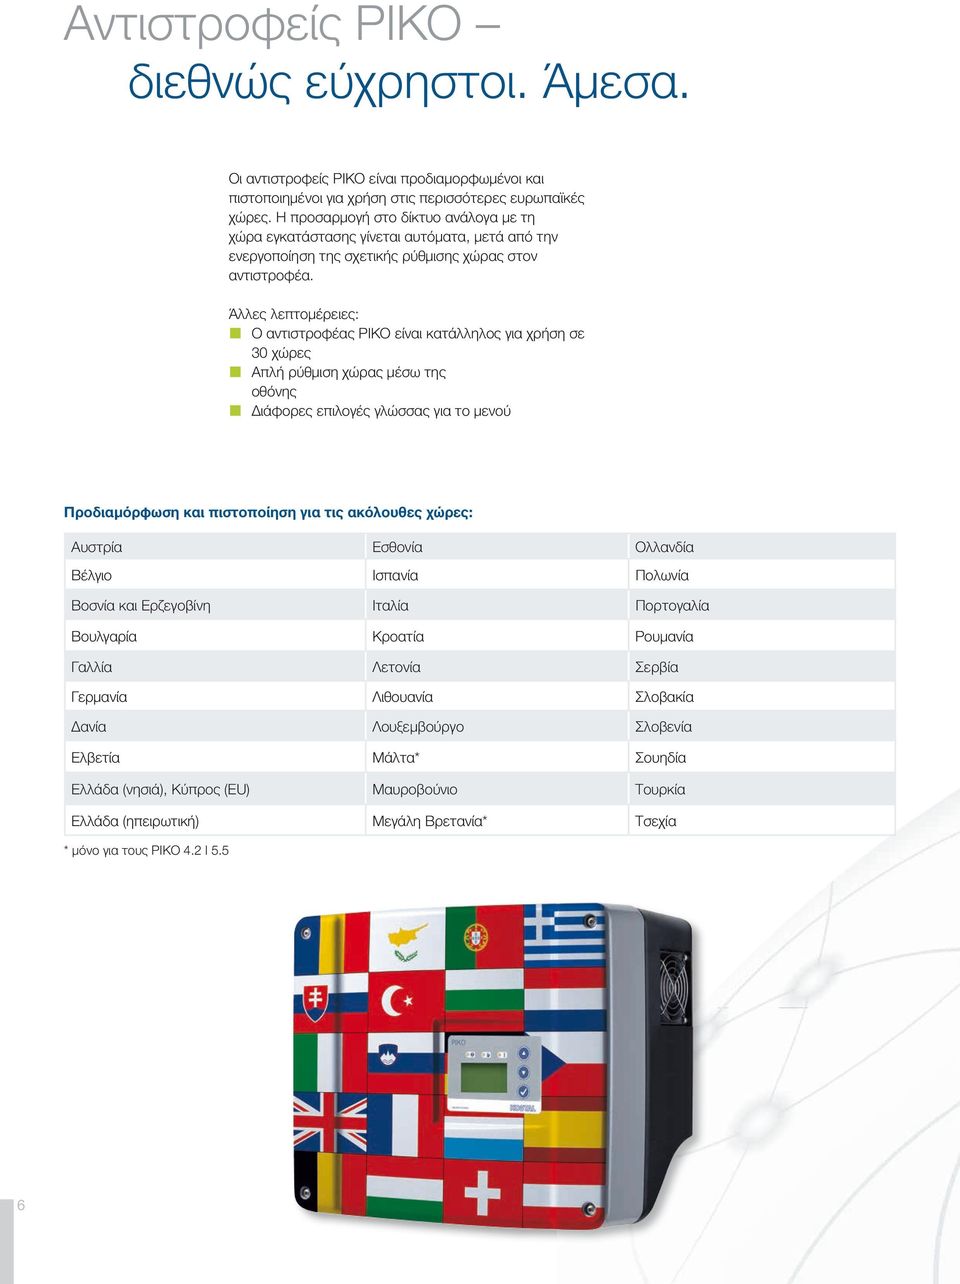 Άλλες λεπτομέρειες: Ο αντιστροφέας PIKO είναι κατάλληλος για χρήση σε 30 χώρες Απλή ρύθμιση χώρας μέσω της οθόνης Διάφορες επιλογές γλώσσας για το μενού Προδιαμόρφωση και πιστοποίηση για τις